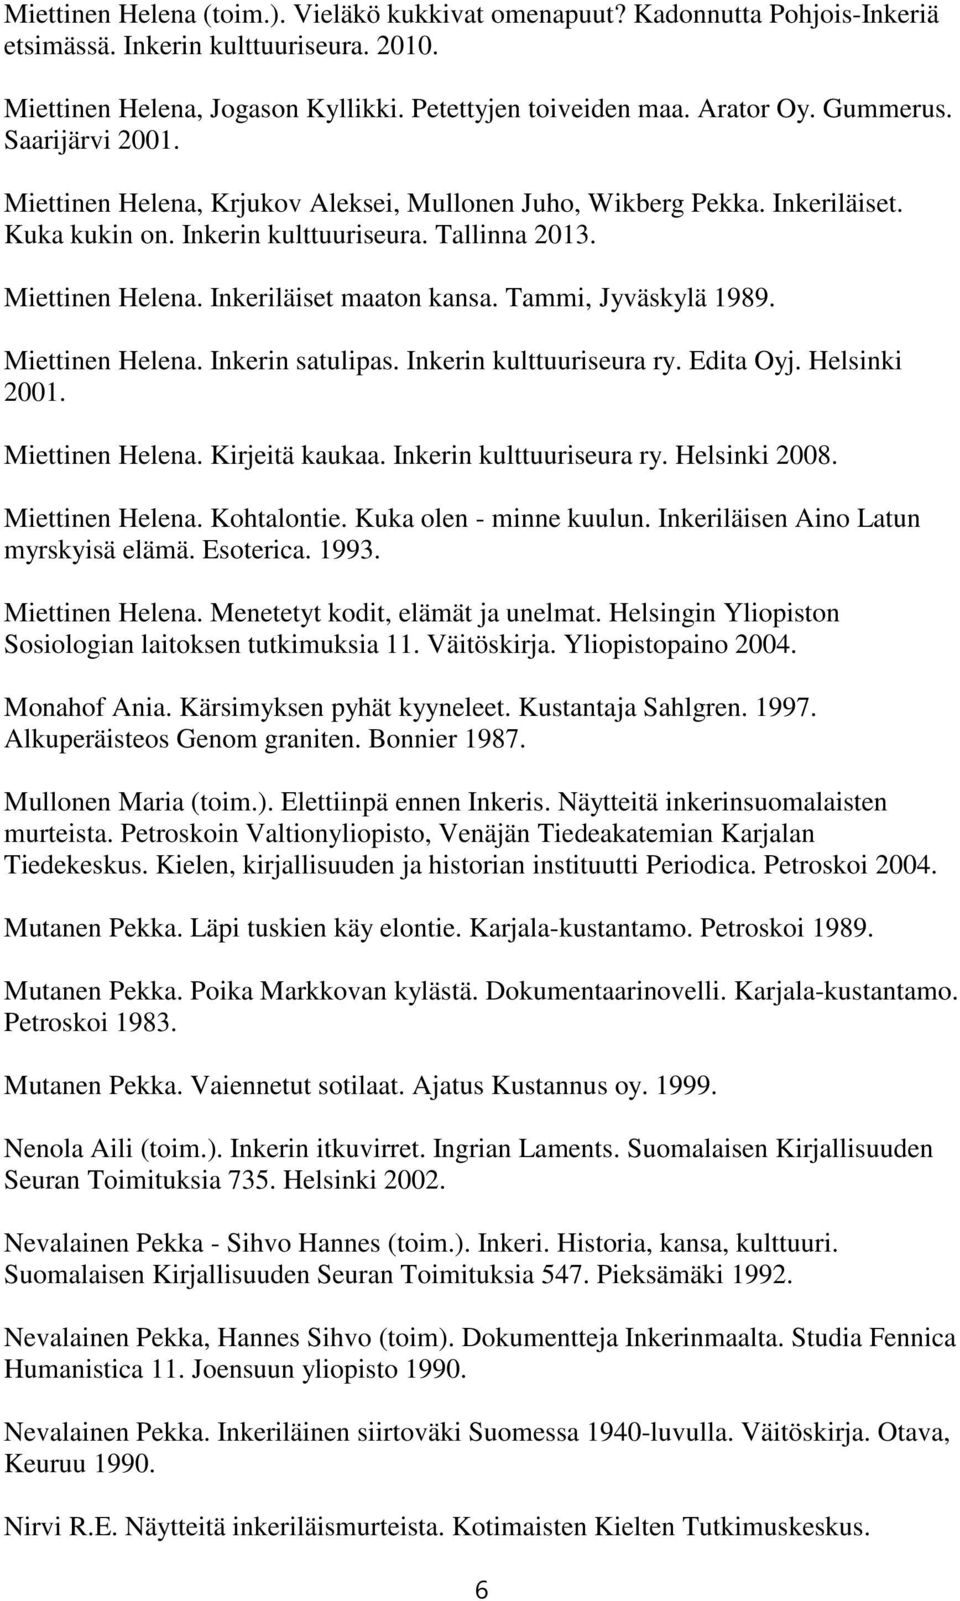 Tammi, Jyväskylä 1989. Miettinen Helena. Inkerin satulipas. Inkerin kulttuuriseura ry. Edita Oyj. Helsinki 2001. Miettinen Helena. Kirjeitä kaukaa. Inkerin kulttuuriseura ry. Helsinki 2008.